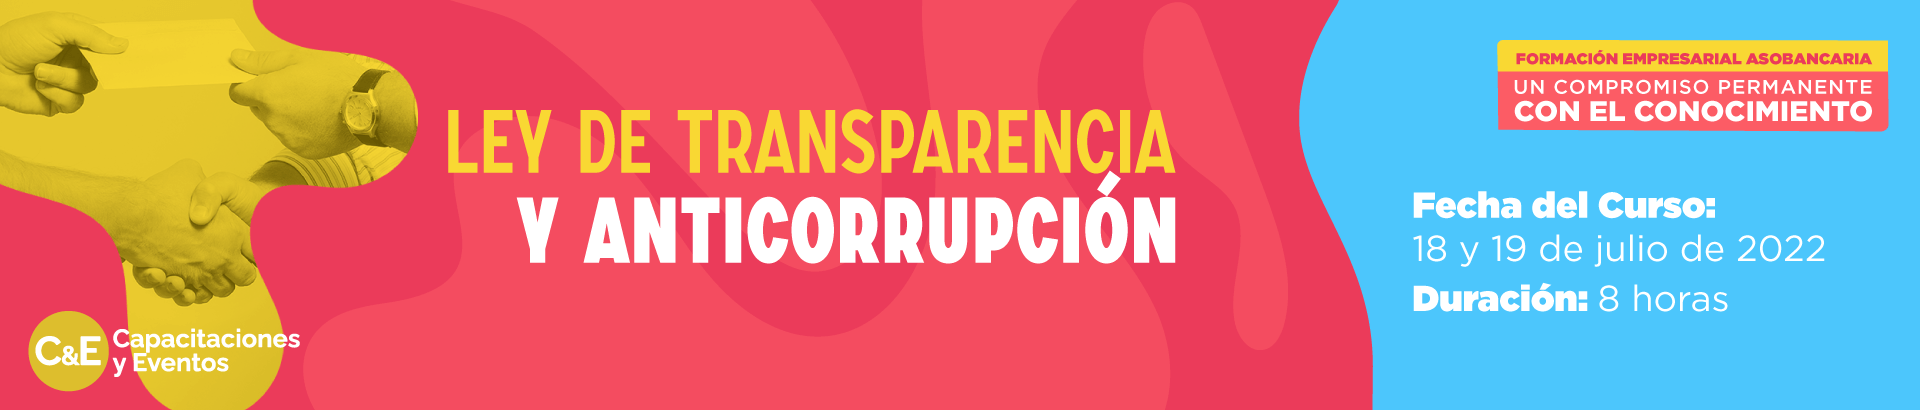 Ley de Transparencia y Anticorrupción